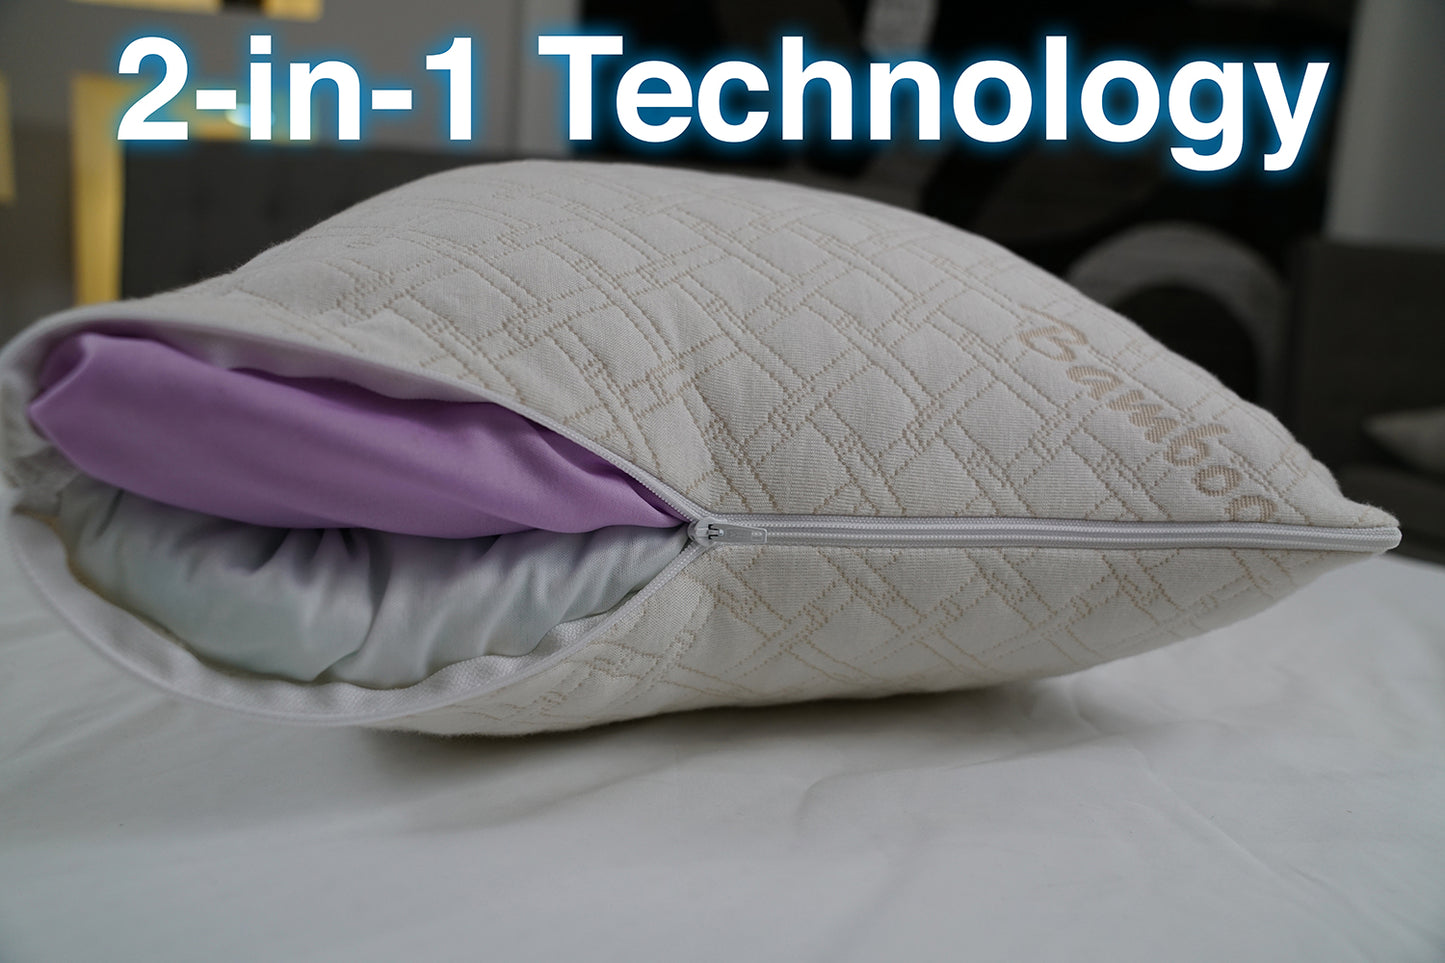 CozyCloud™ Deluxe 2-in-1 Adjustable Memory Foam Pillow